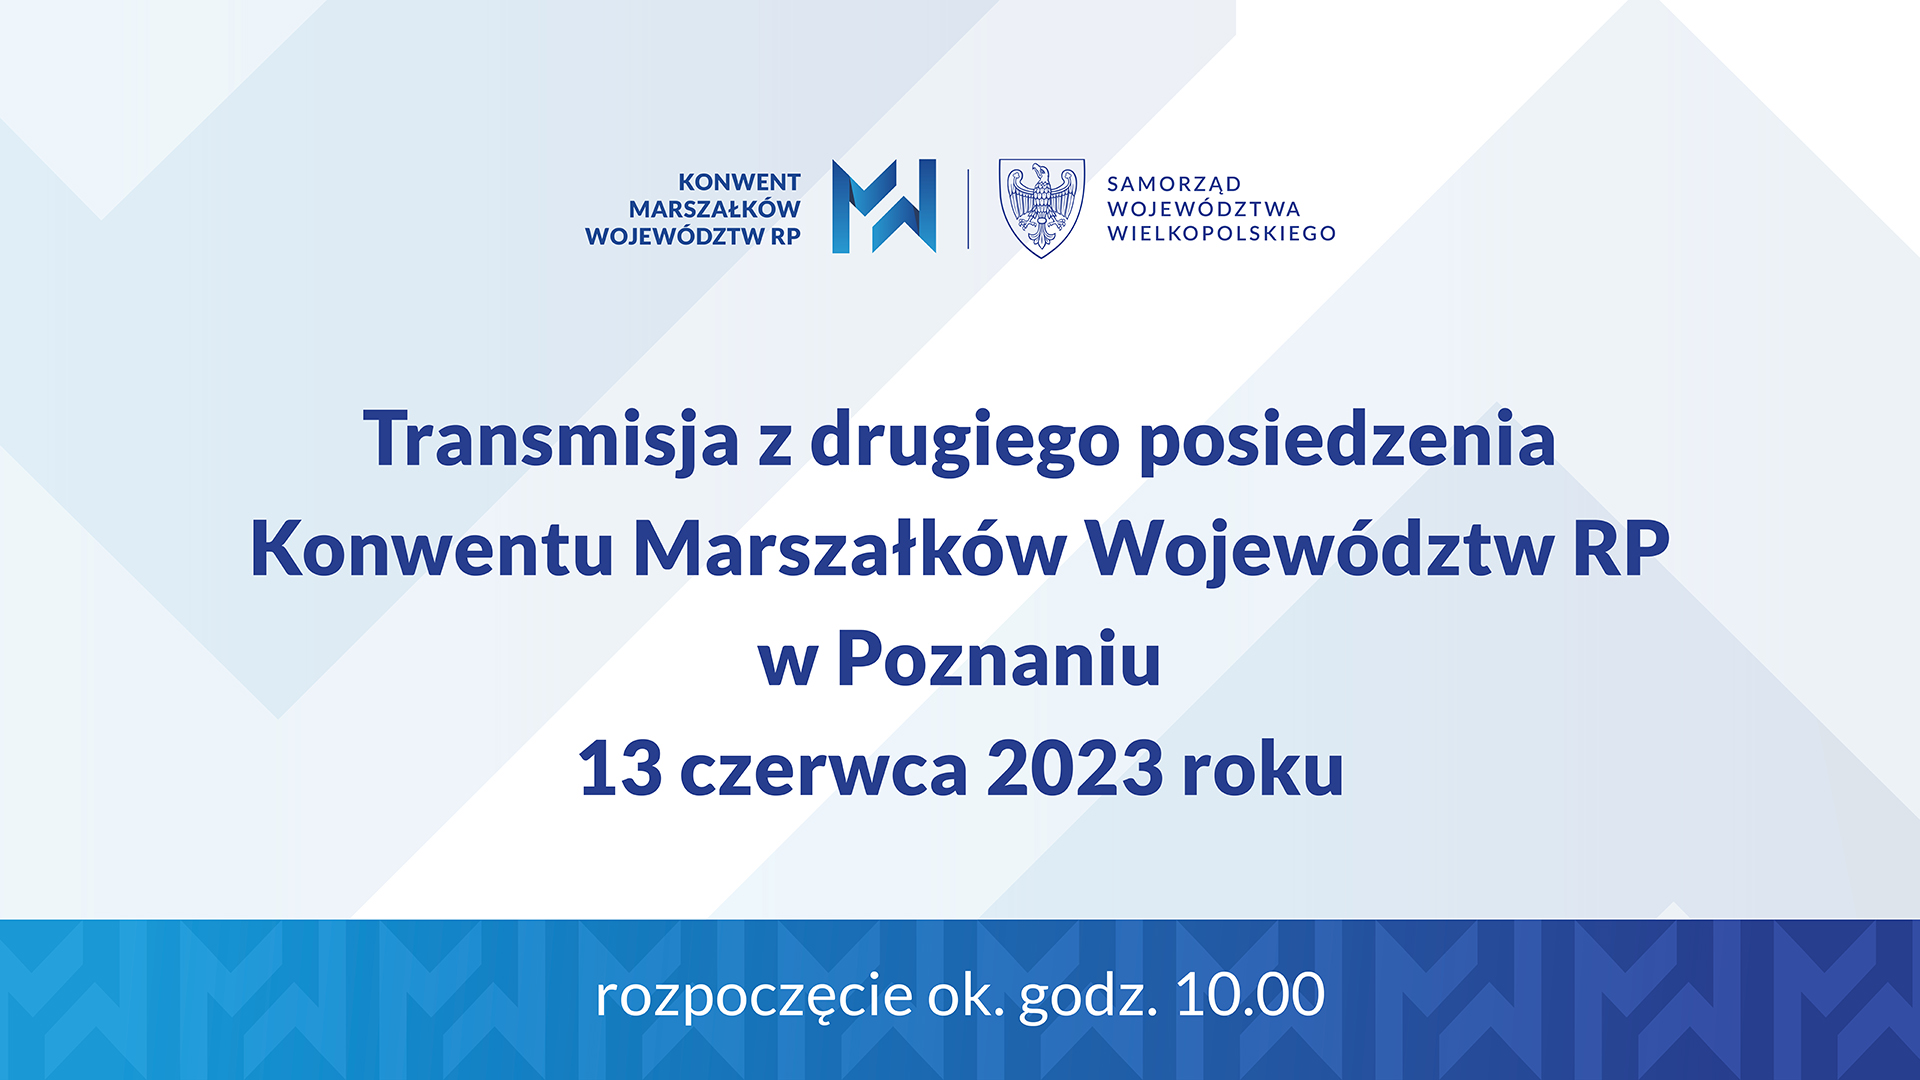 Tablica informująca o transmisja z drugiego posiedzenia Konwentu Marszałków Województwa Wielkopolskiego RP w Poznaniu, 13 czerwca 2023 roku